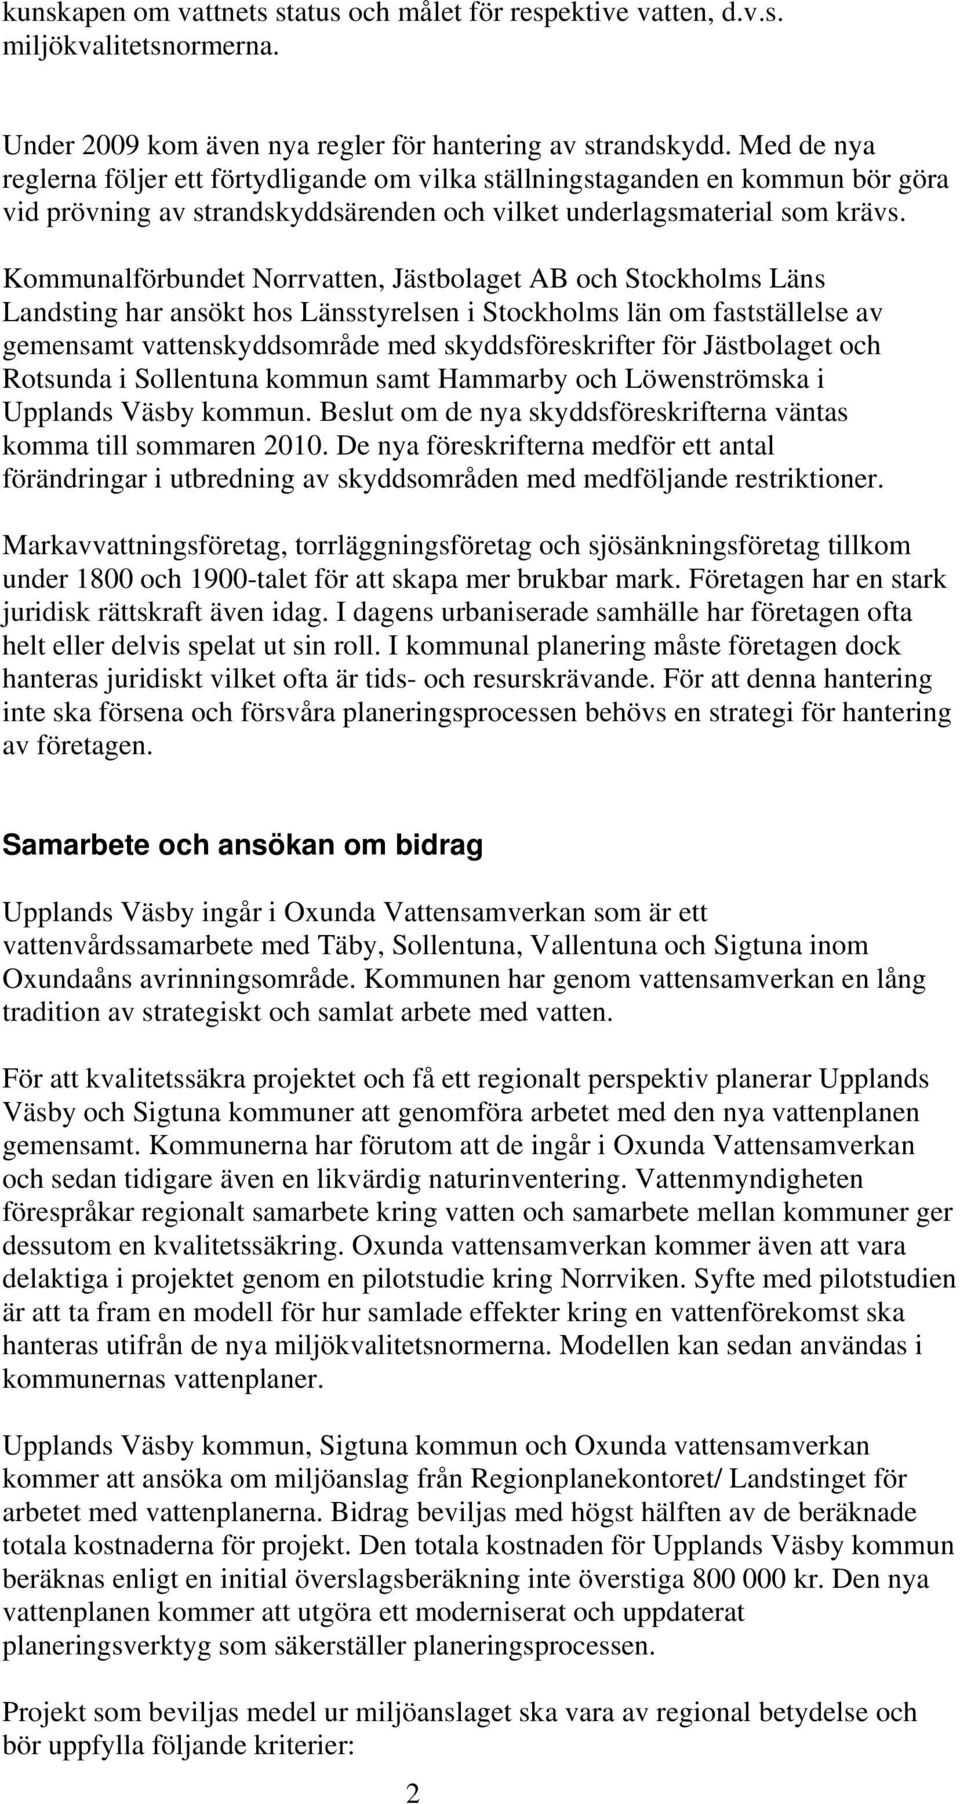 Kommunalförbundet Norrvatten, Jästbolaget AB och Stockholms Läns Landsting har ansökt hos Länsstyrelsen i Stockholms län om fastställelse av gemensamt vattenskyddsområde med skyddsföreskrifter för